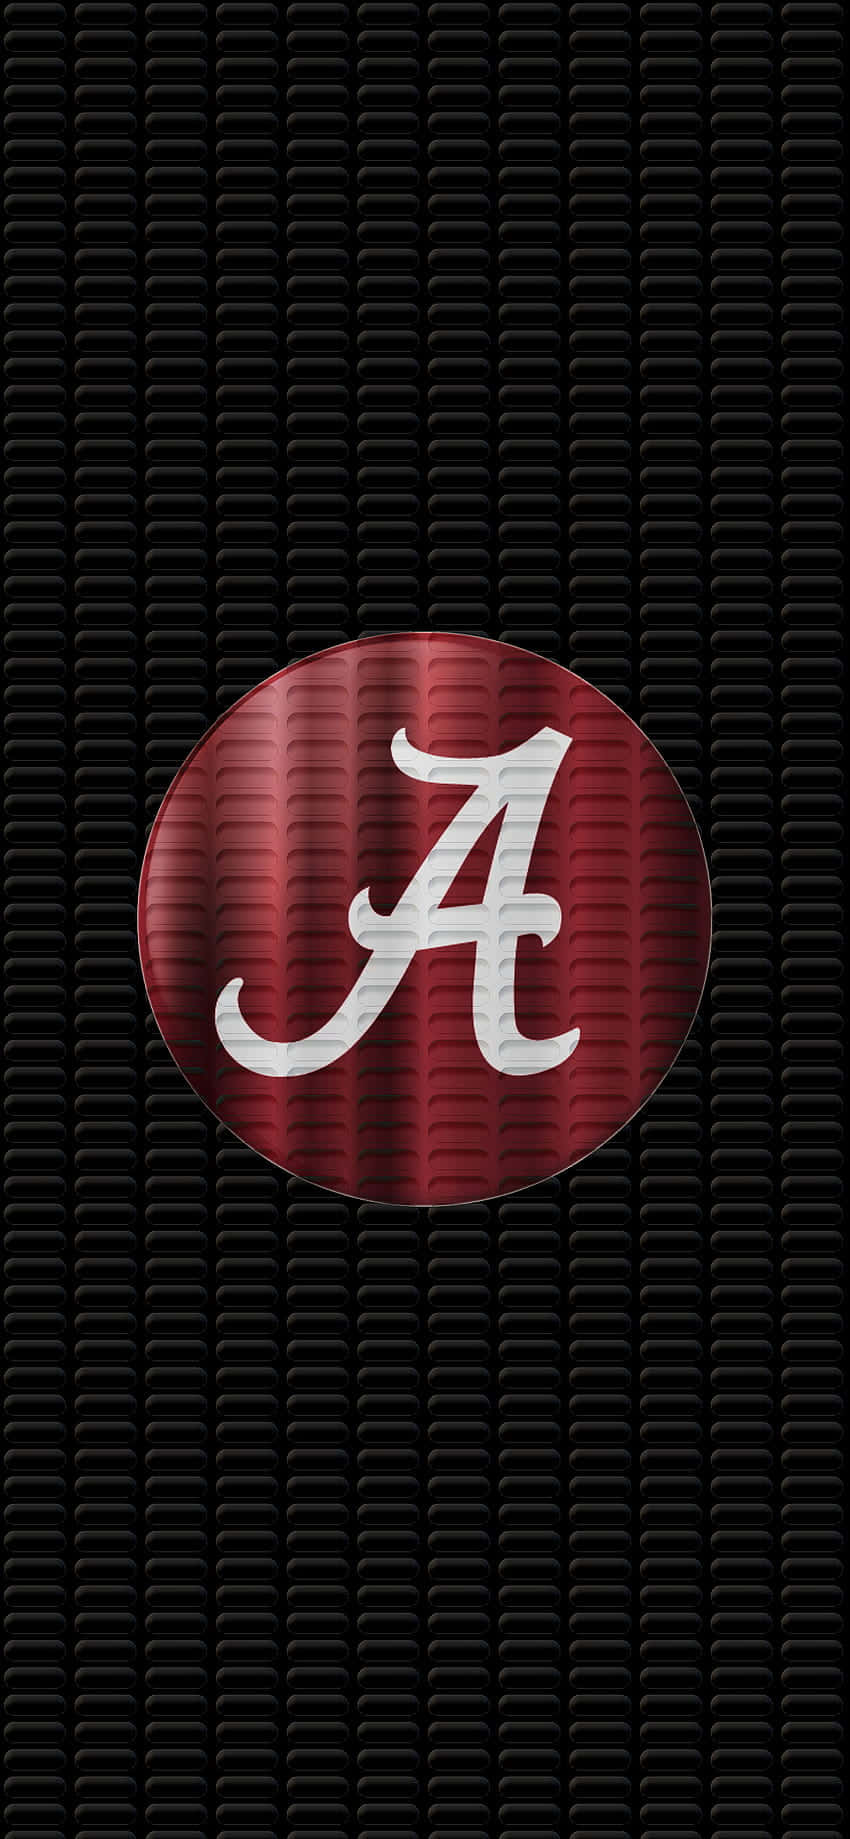 Crimsontide Fans, Macht Euch Bereit Für Das Nächste Große Spiel Mit Einem Alabama Football Iphone Hintergrund. Wallpaper